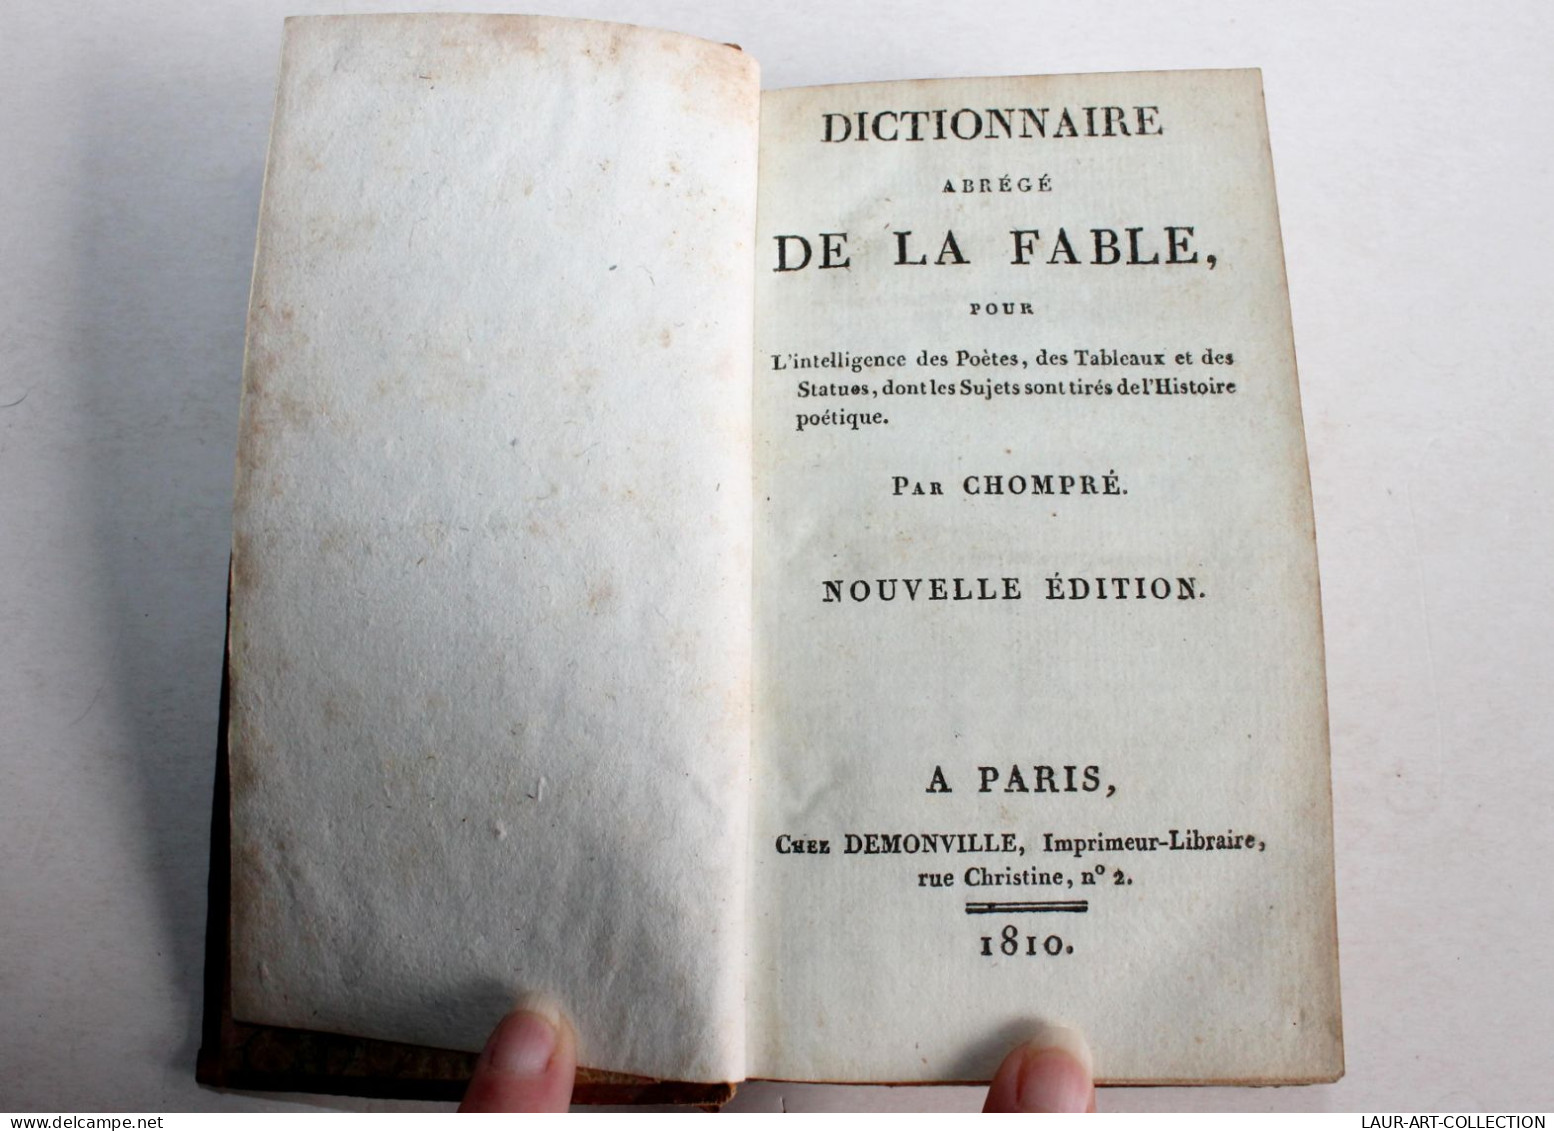 DICTIONNAIRE ABREGE DE LA FABLE Pour DES POETES De CHOMPRE NOUVELLE EDITION 1810 / ANCIEN LIVRE XIXe SIECLE (1803.116) - Auteurs Français